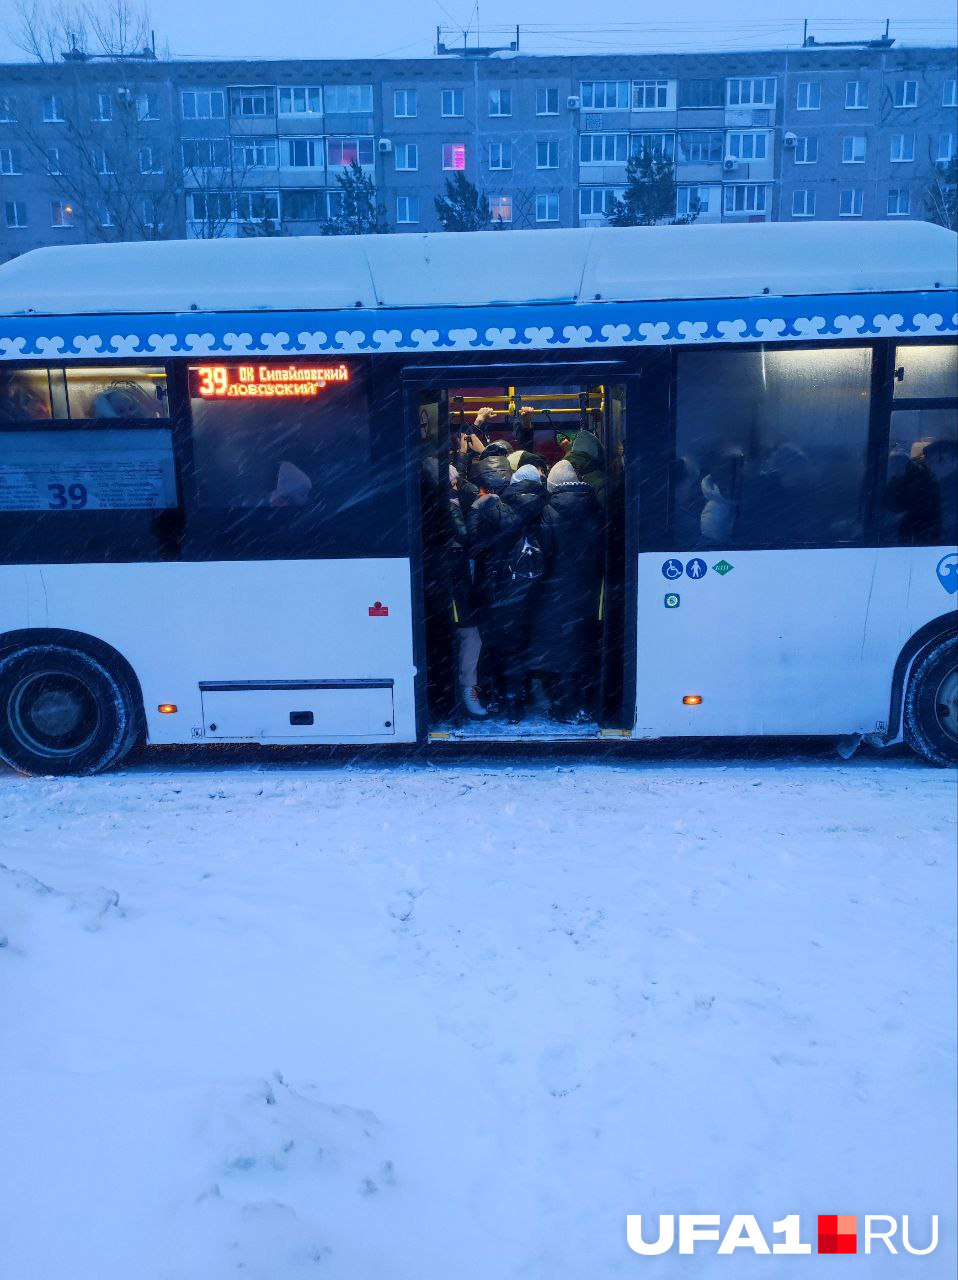 Автобусы забиты до отказа